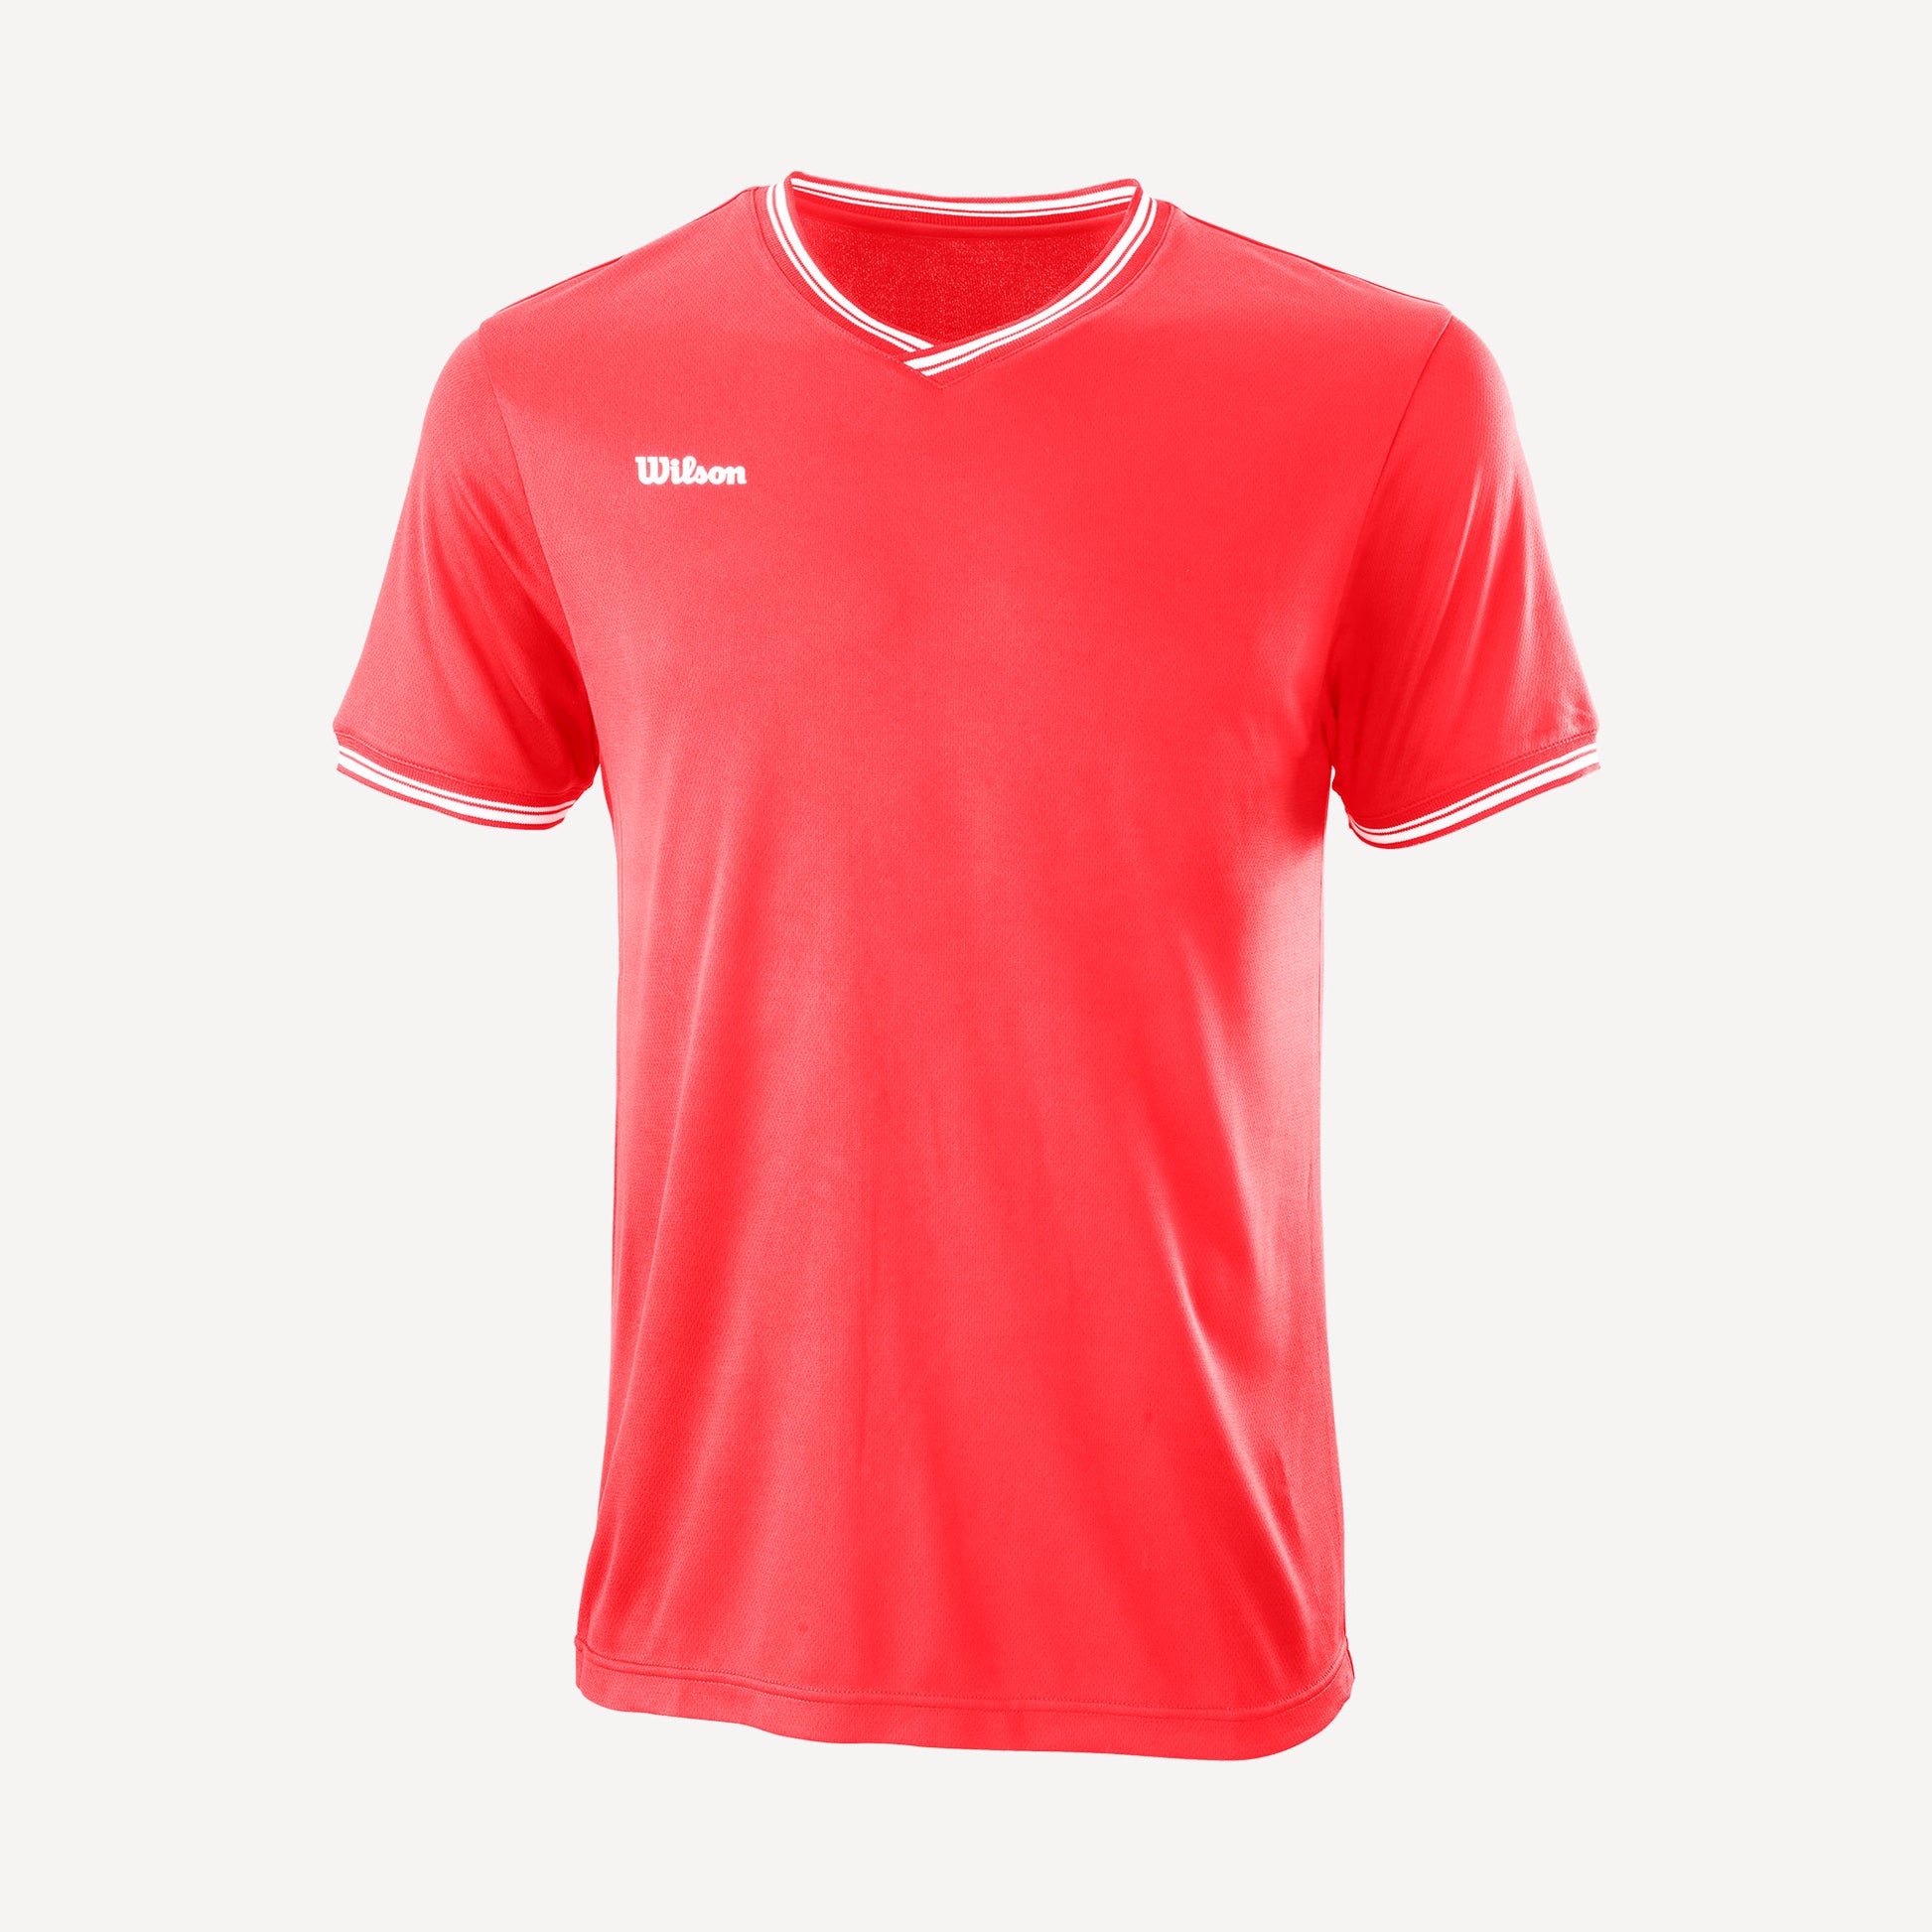 Wilson Team 2 Men's V-Neck Tennis Shirt Orange (1)